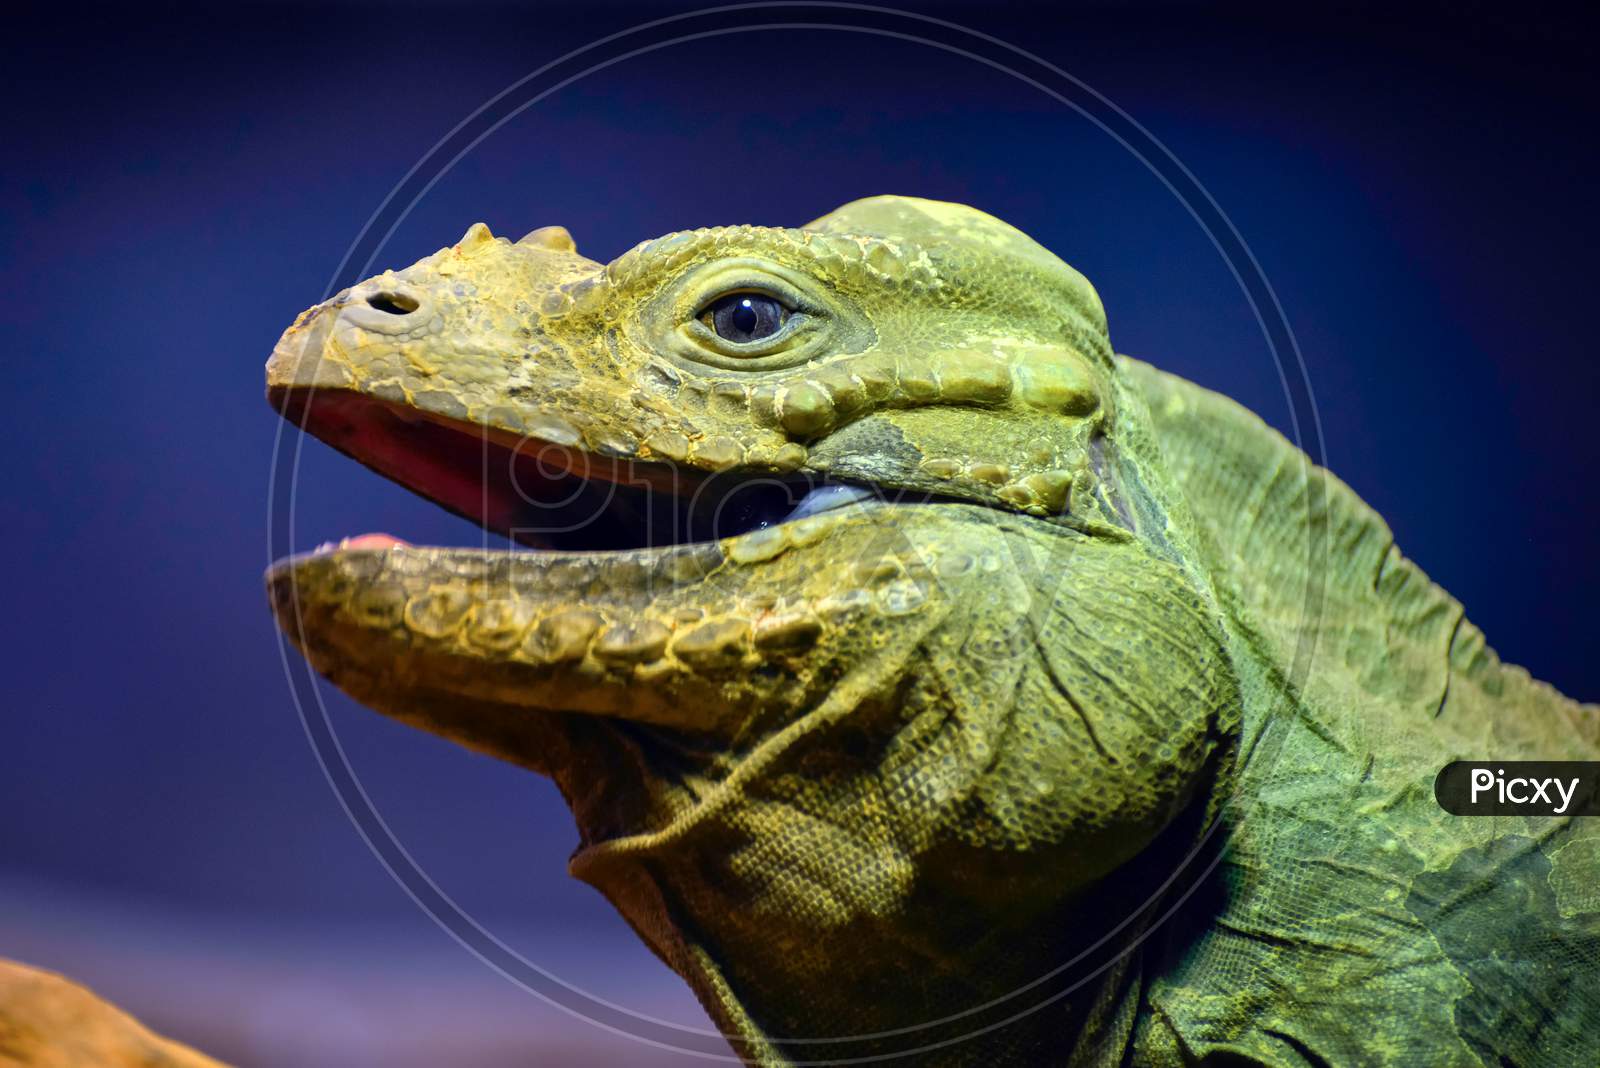 Green Iguana (Iguana Iguana)